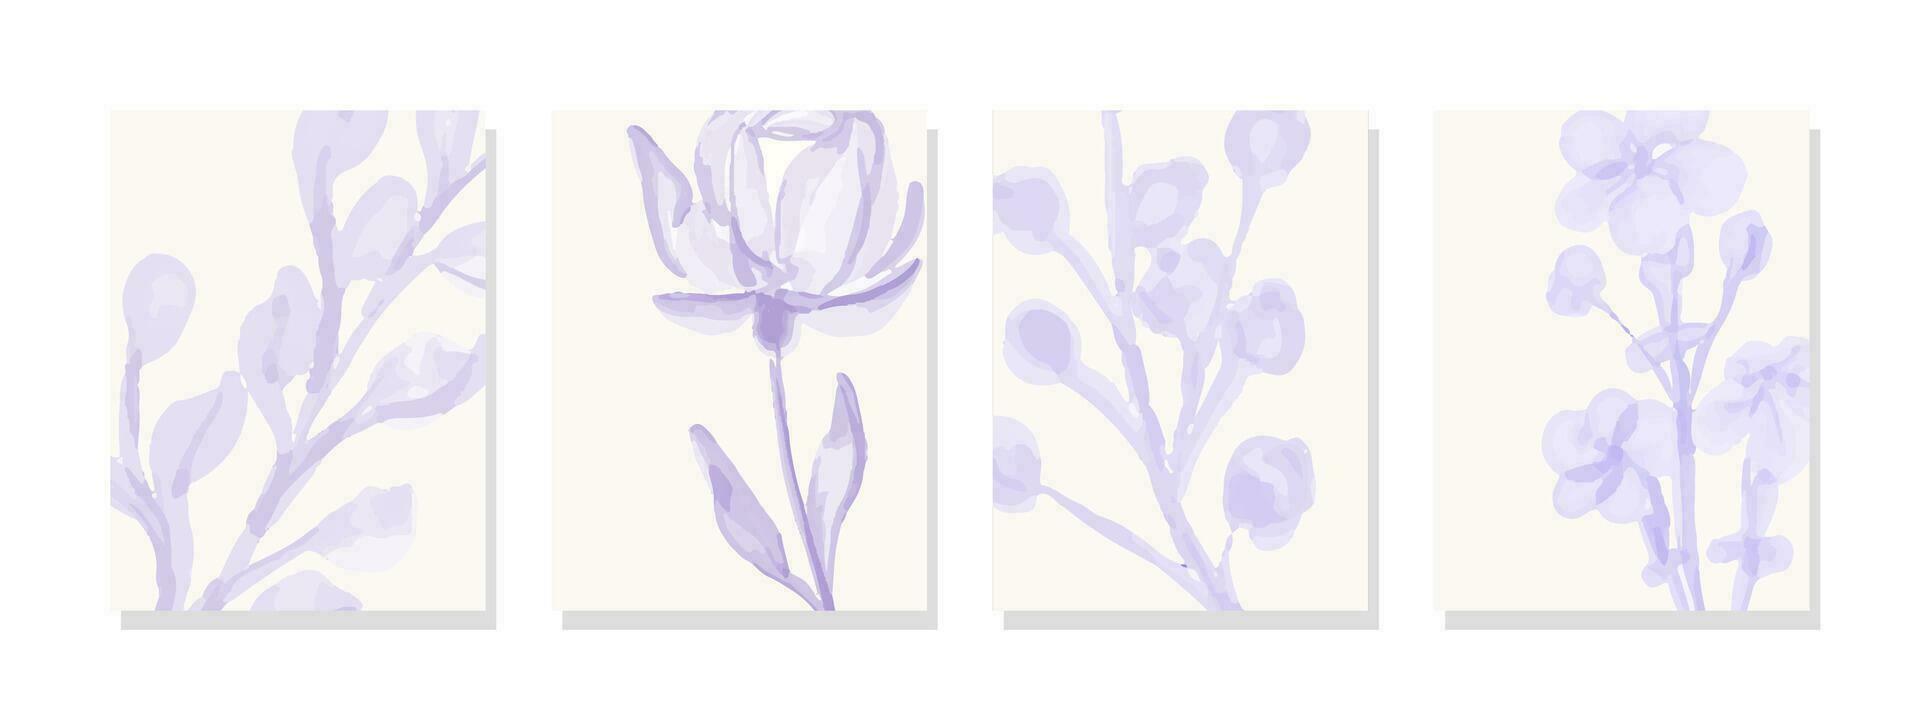 zart lila Blumen- Blüten bestechen gegen ein makellos Weiß Hintergrund, präsentieren beschwingt Farbtöne und harmonisch Anordnung im ein fesselnd Aquarell malen. vektor